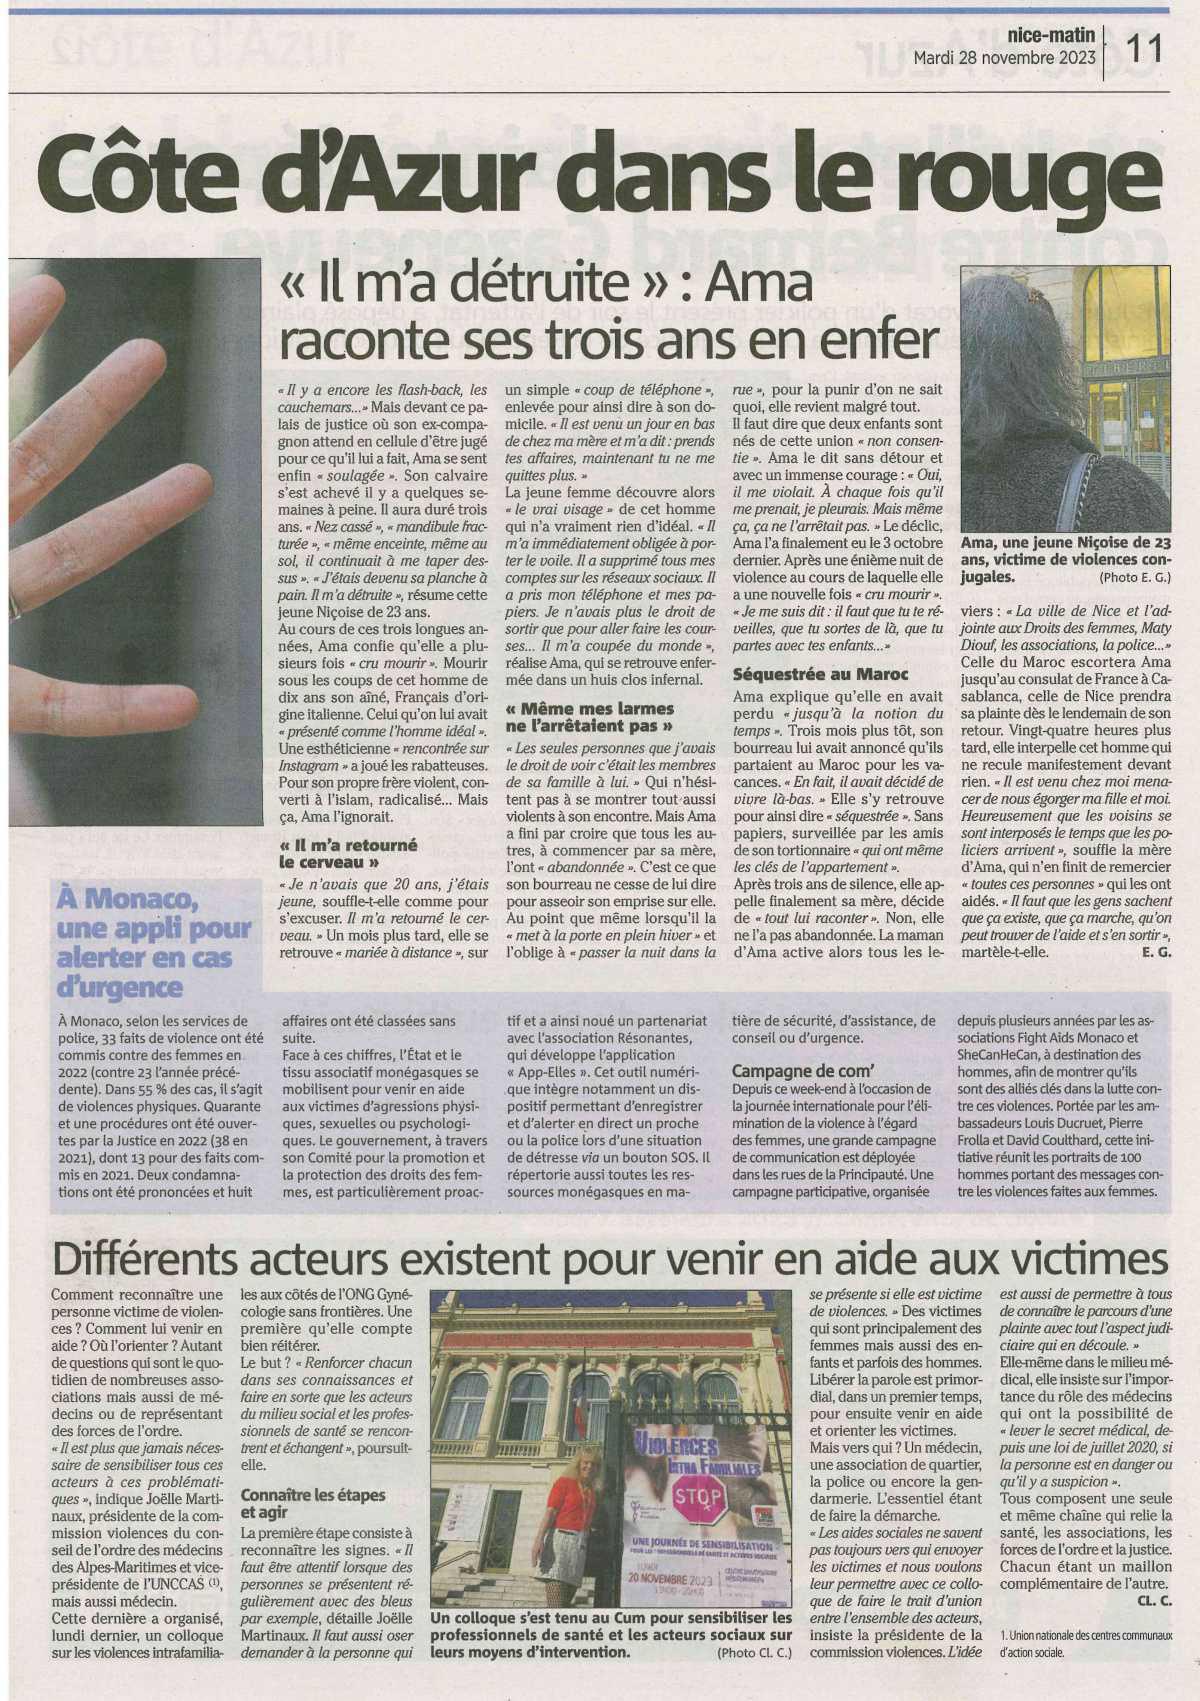 Violences conjugales: la Côte d'Azur dans le rouge